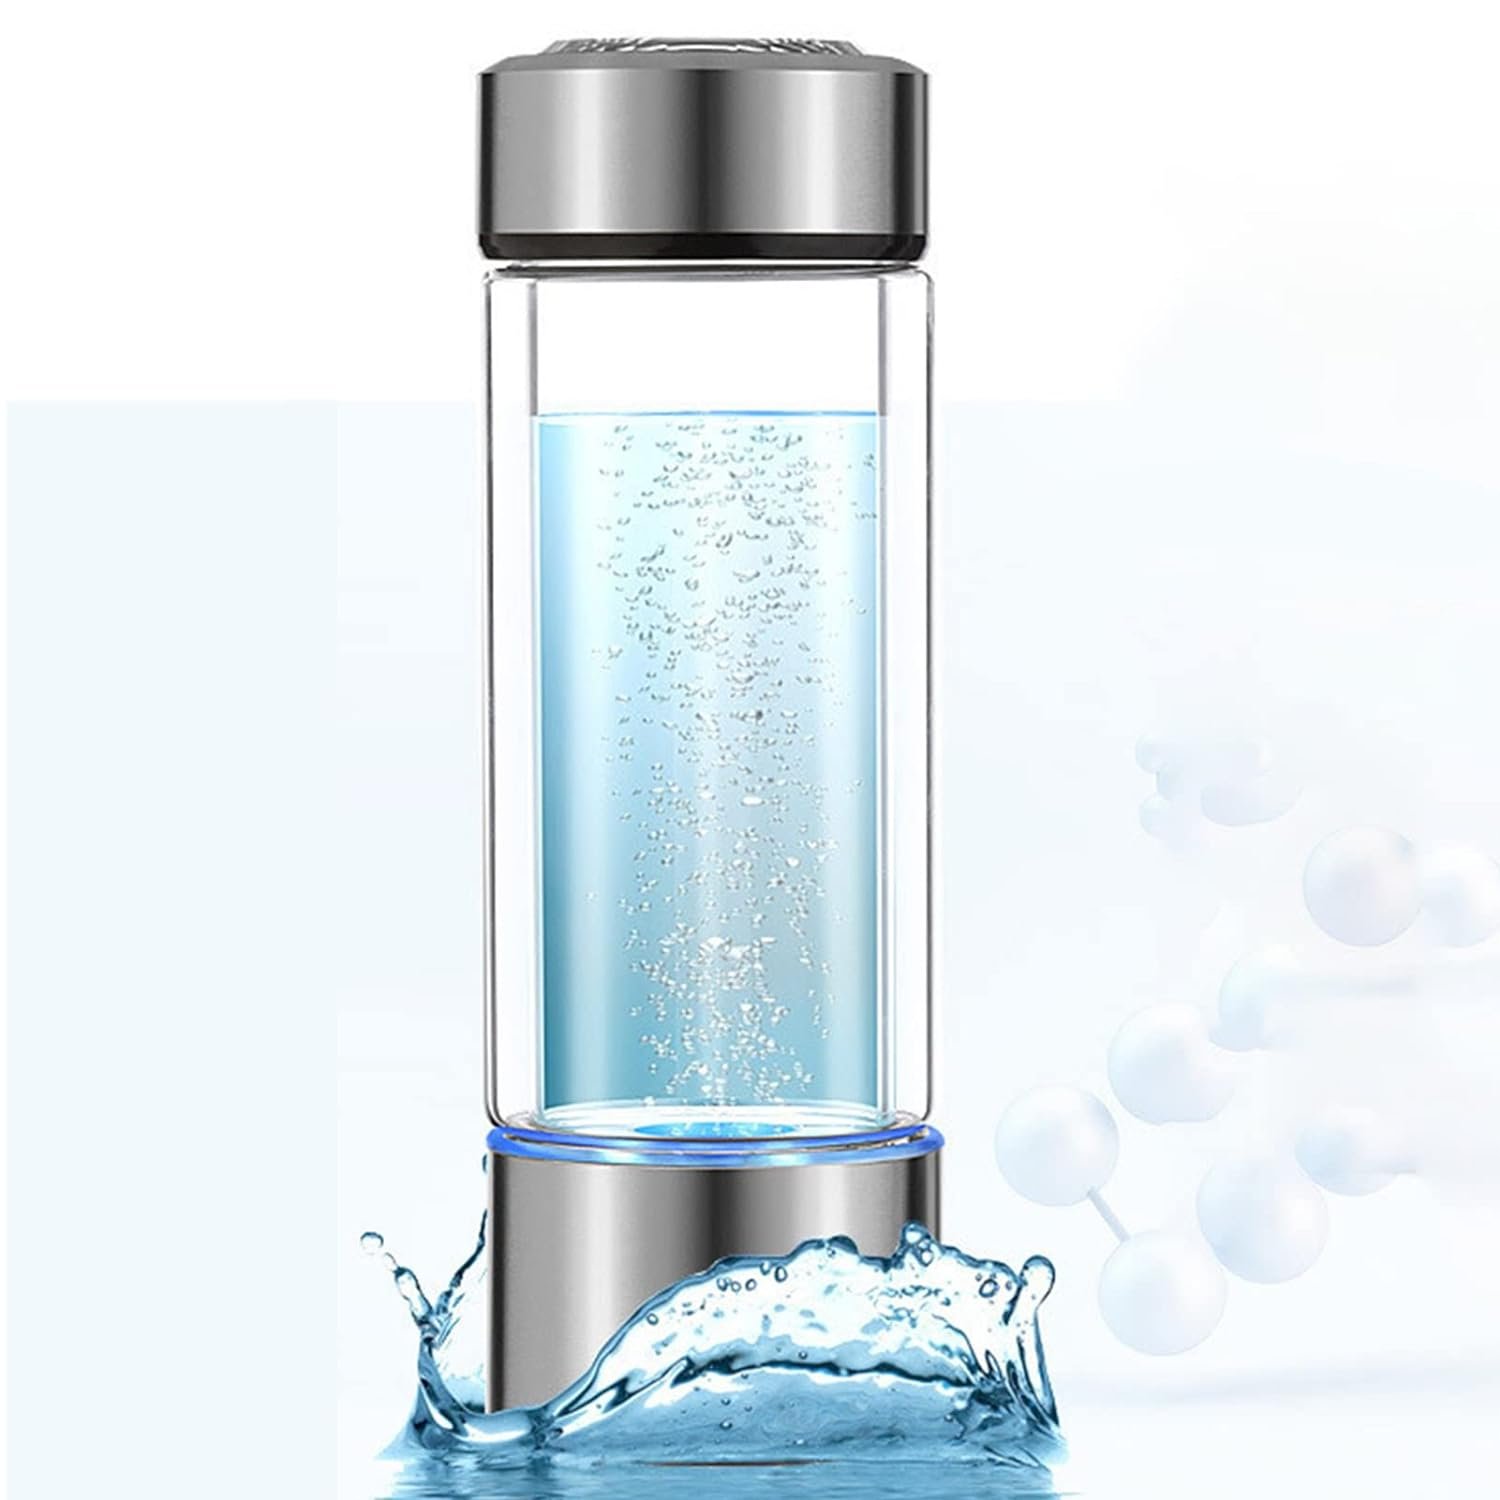 Buy AOK 808 - Portable Hydrogen Water Bottle - Best Water Inc. USA